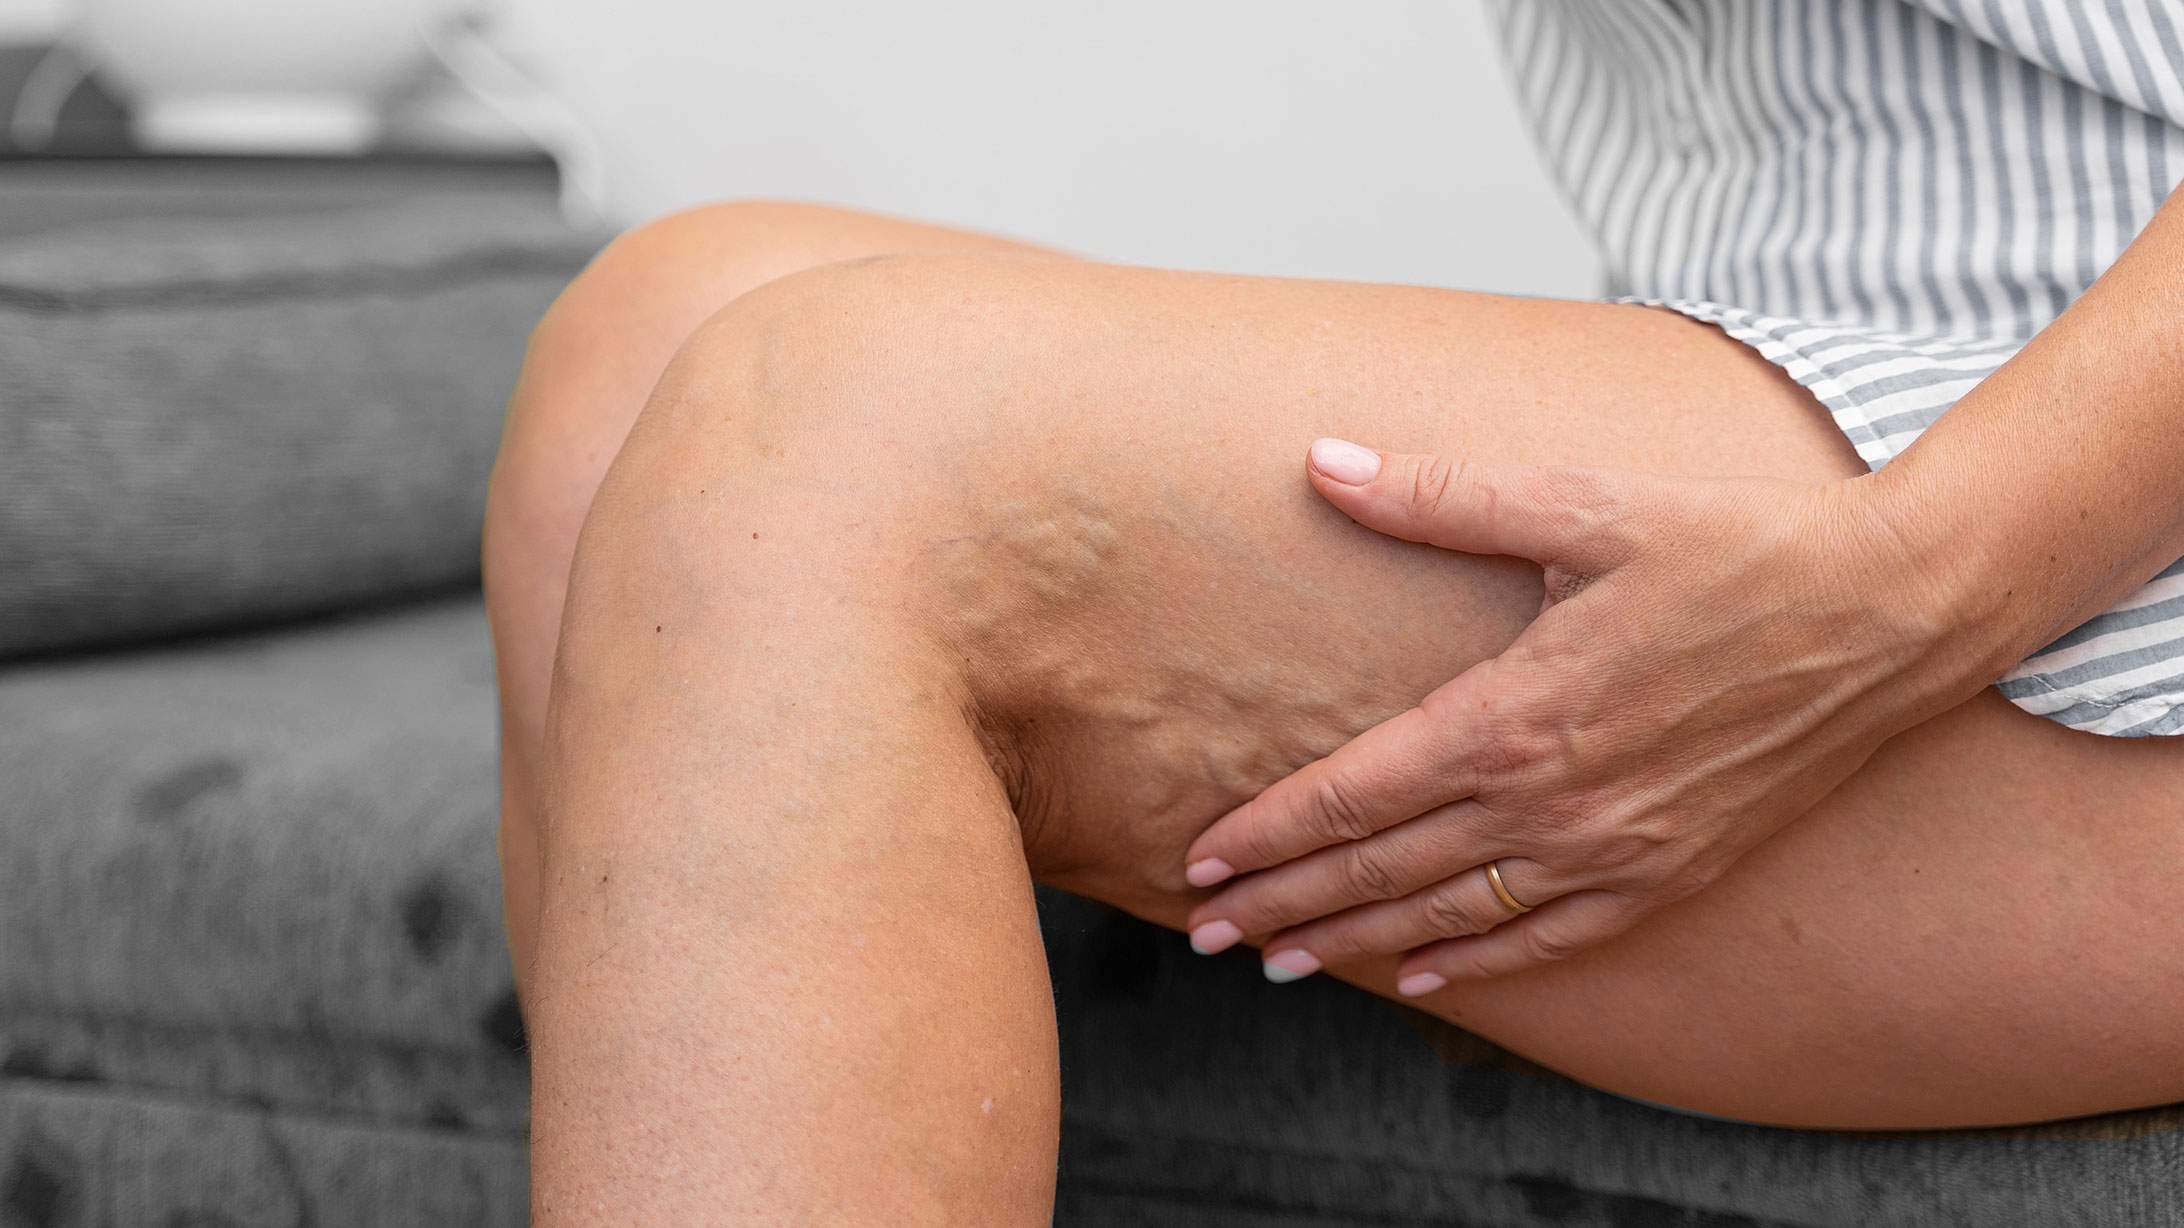 Das Bild zeigt die Beine einer sitzenden Frau. In ihren Kniekehlen sind Krampfadern ersichtlich.